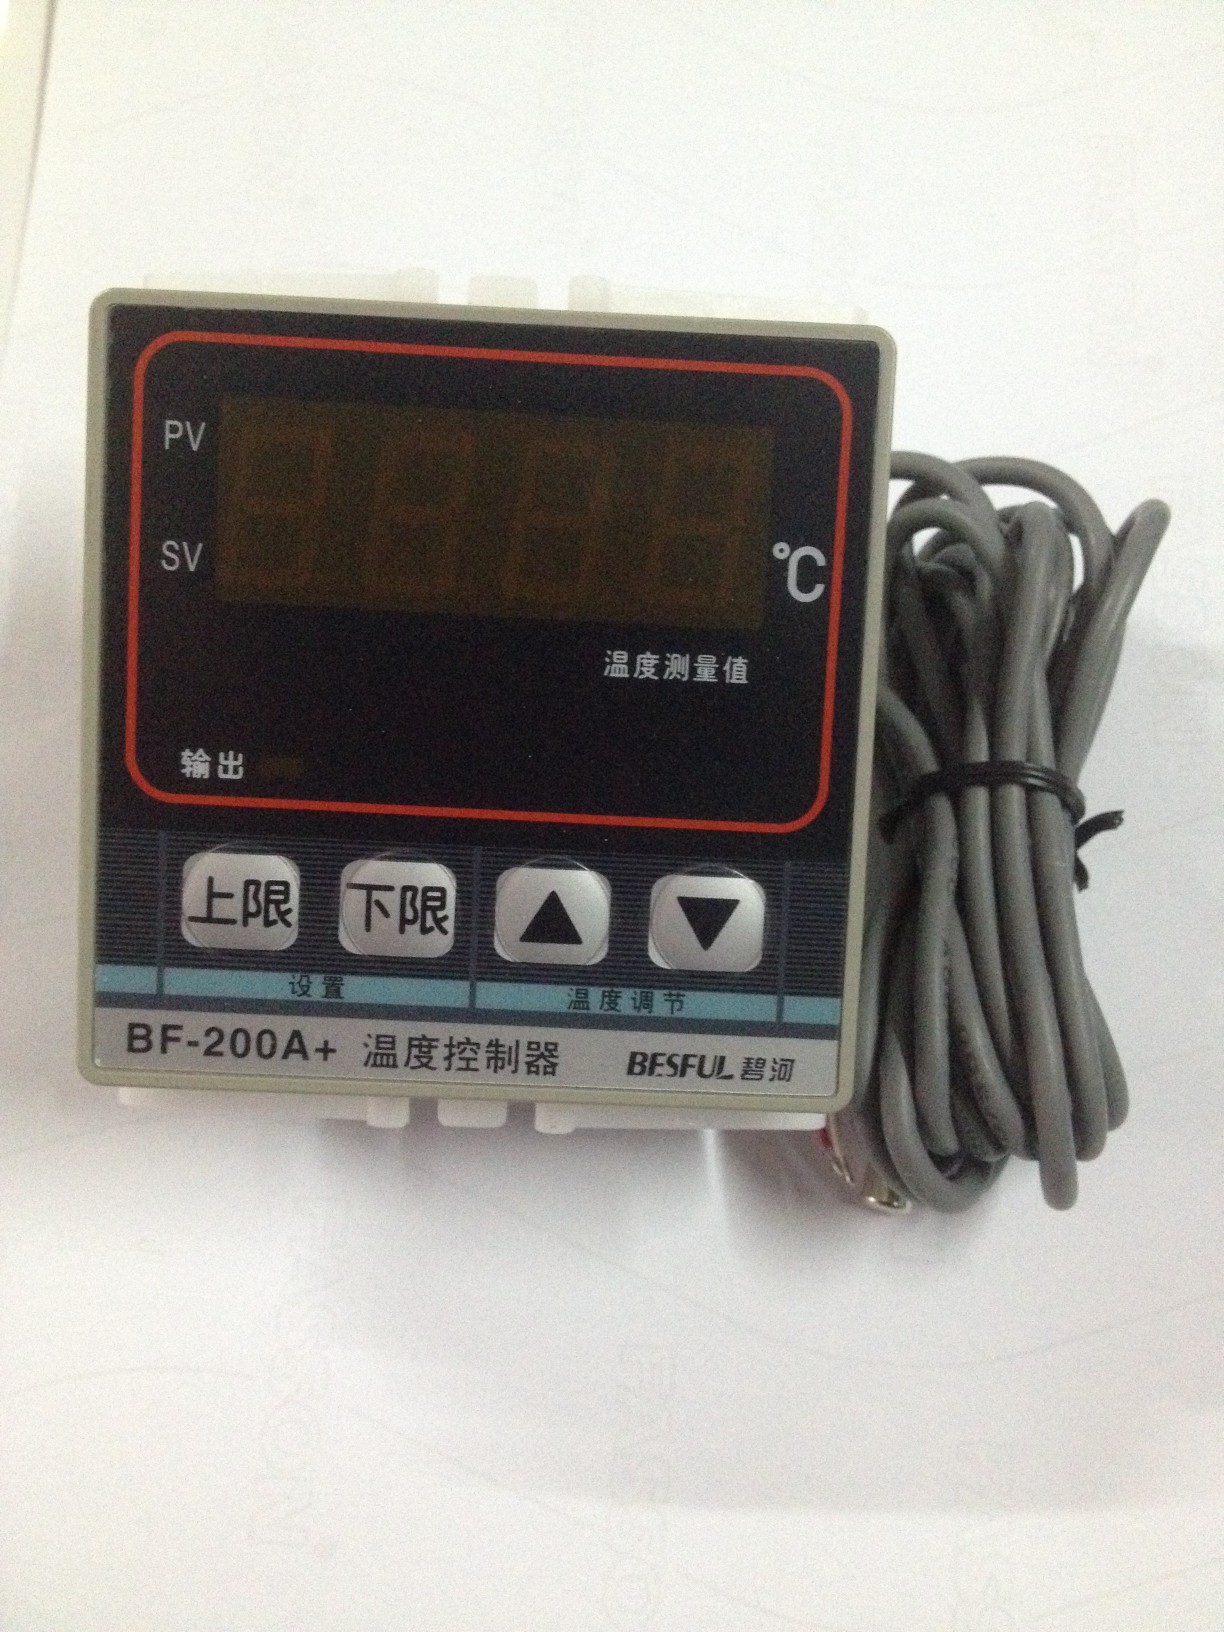 原装BESFUL碧河控器BF-200A+温度控制器 数显温度表